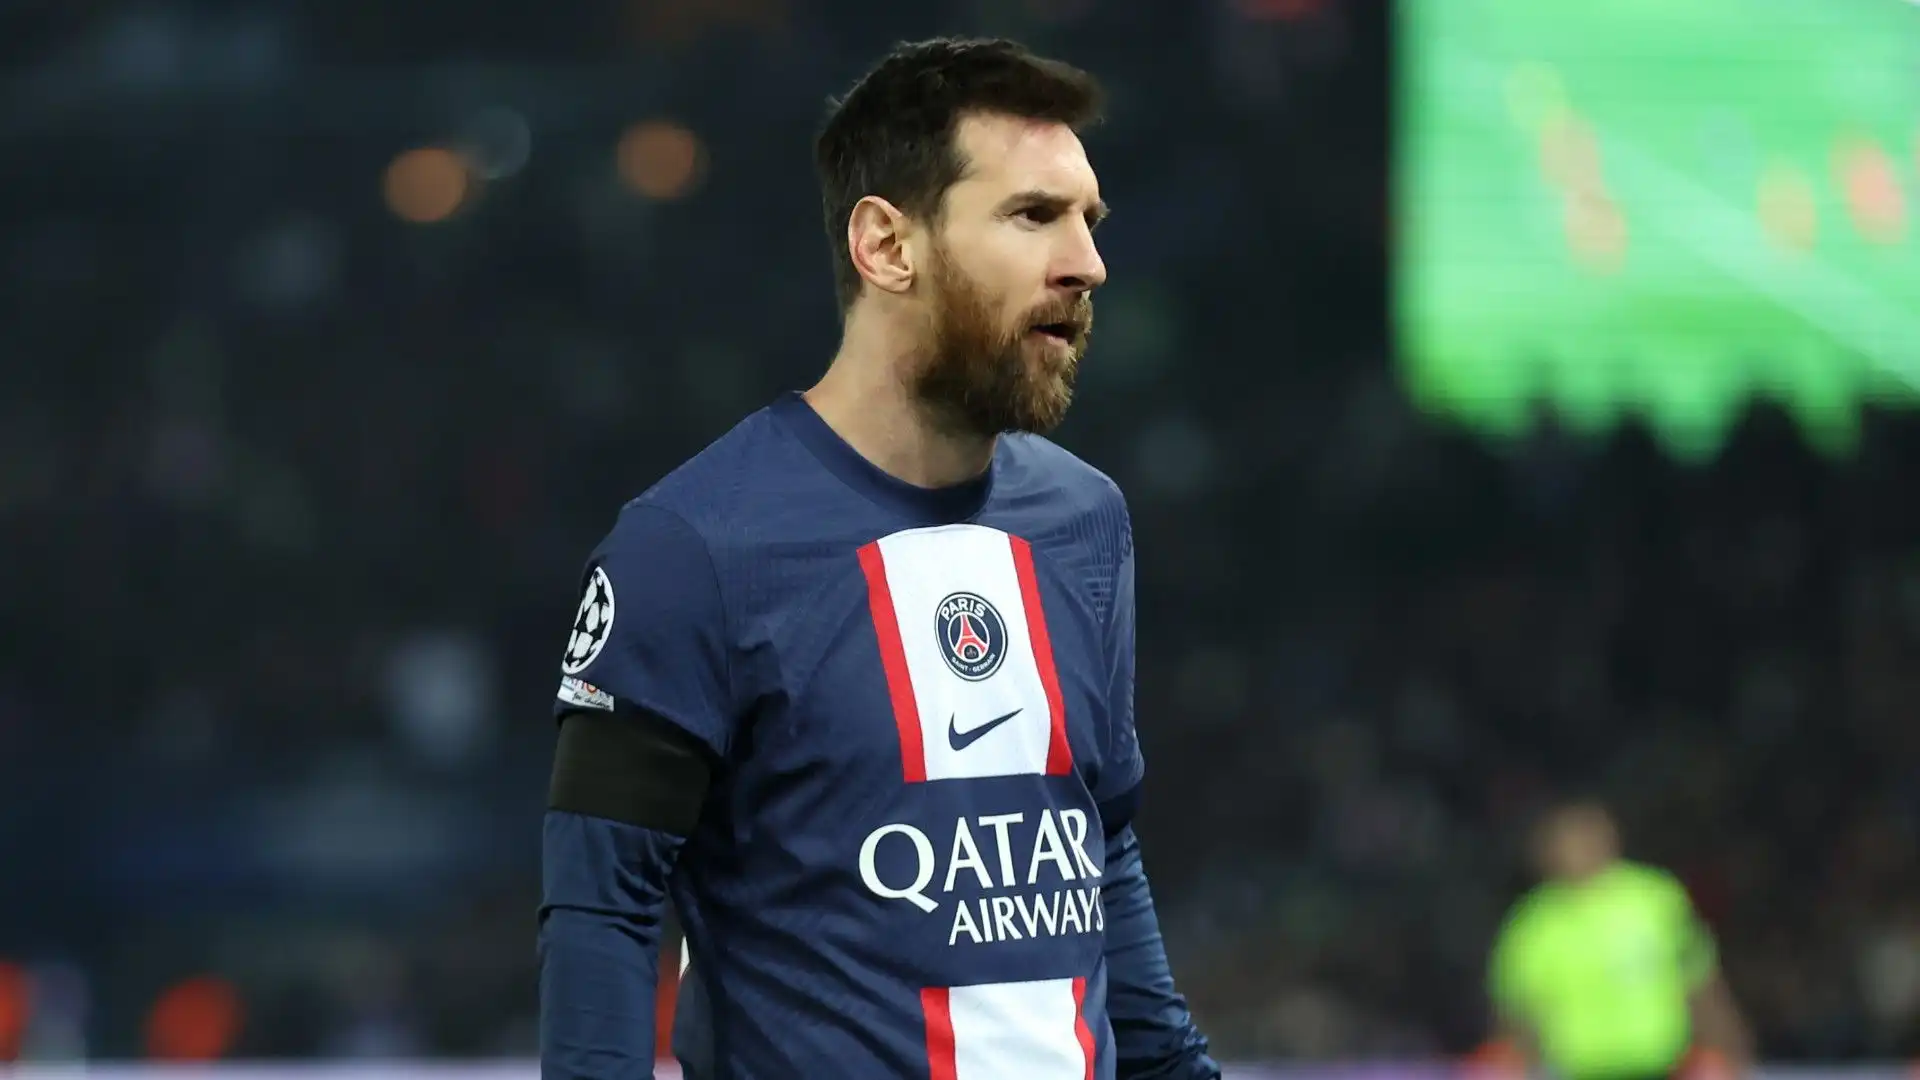 L'esperienza di Lionel Messi al Paris Saint Germain non è stata particolarmente felice